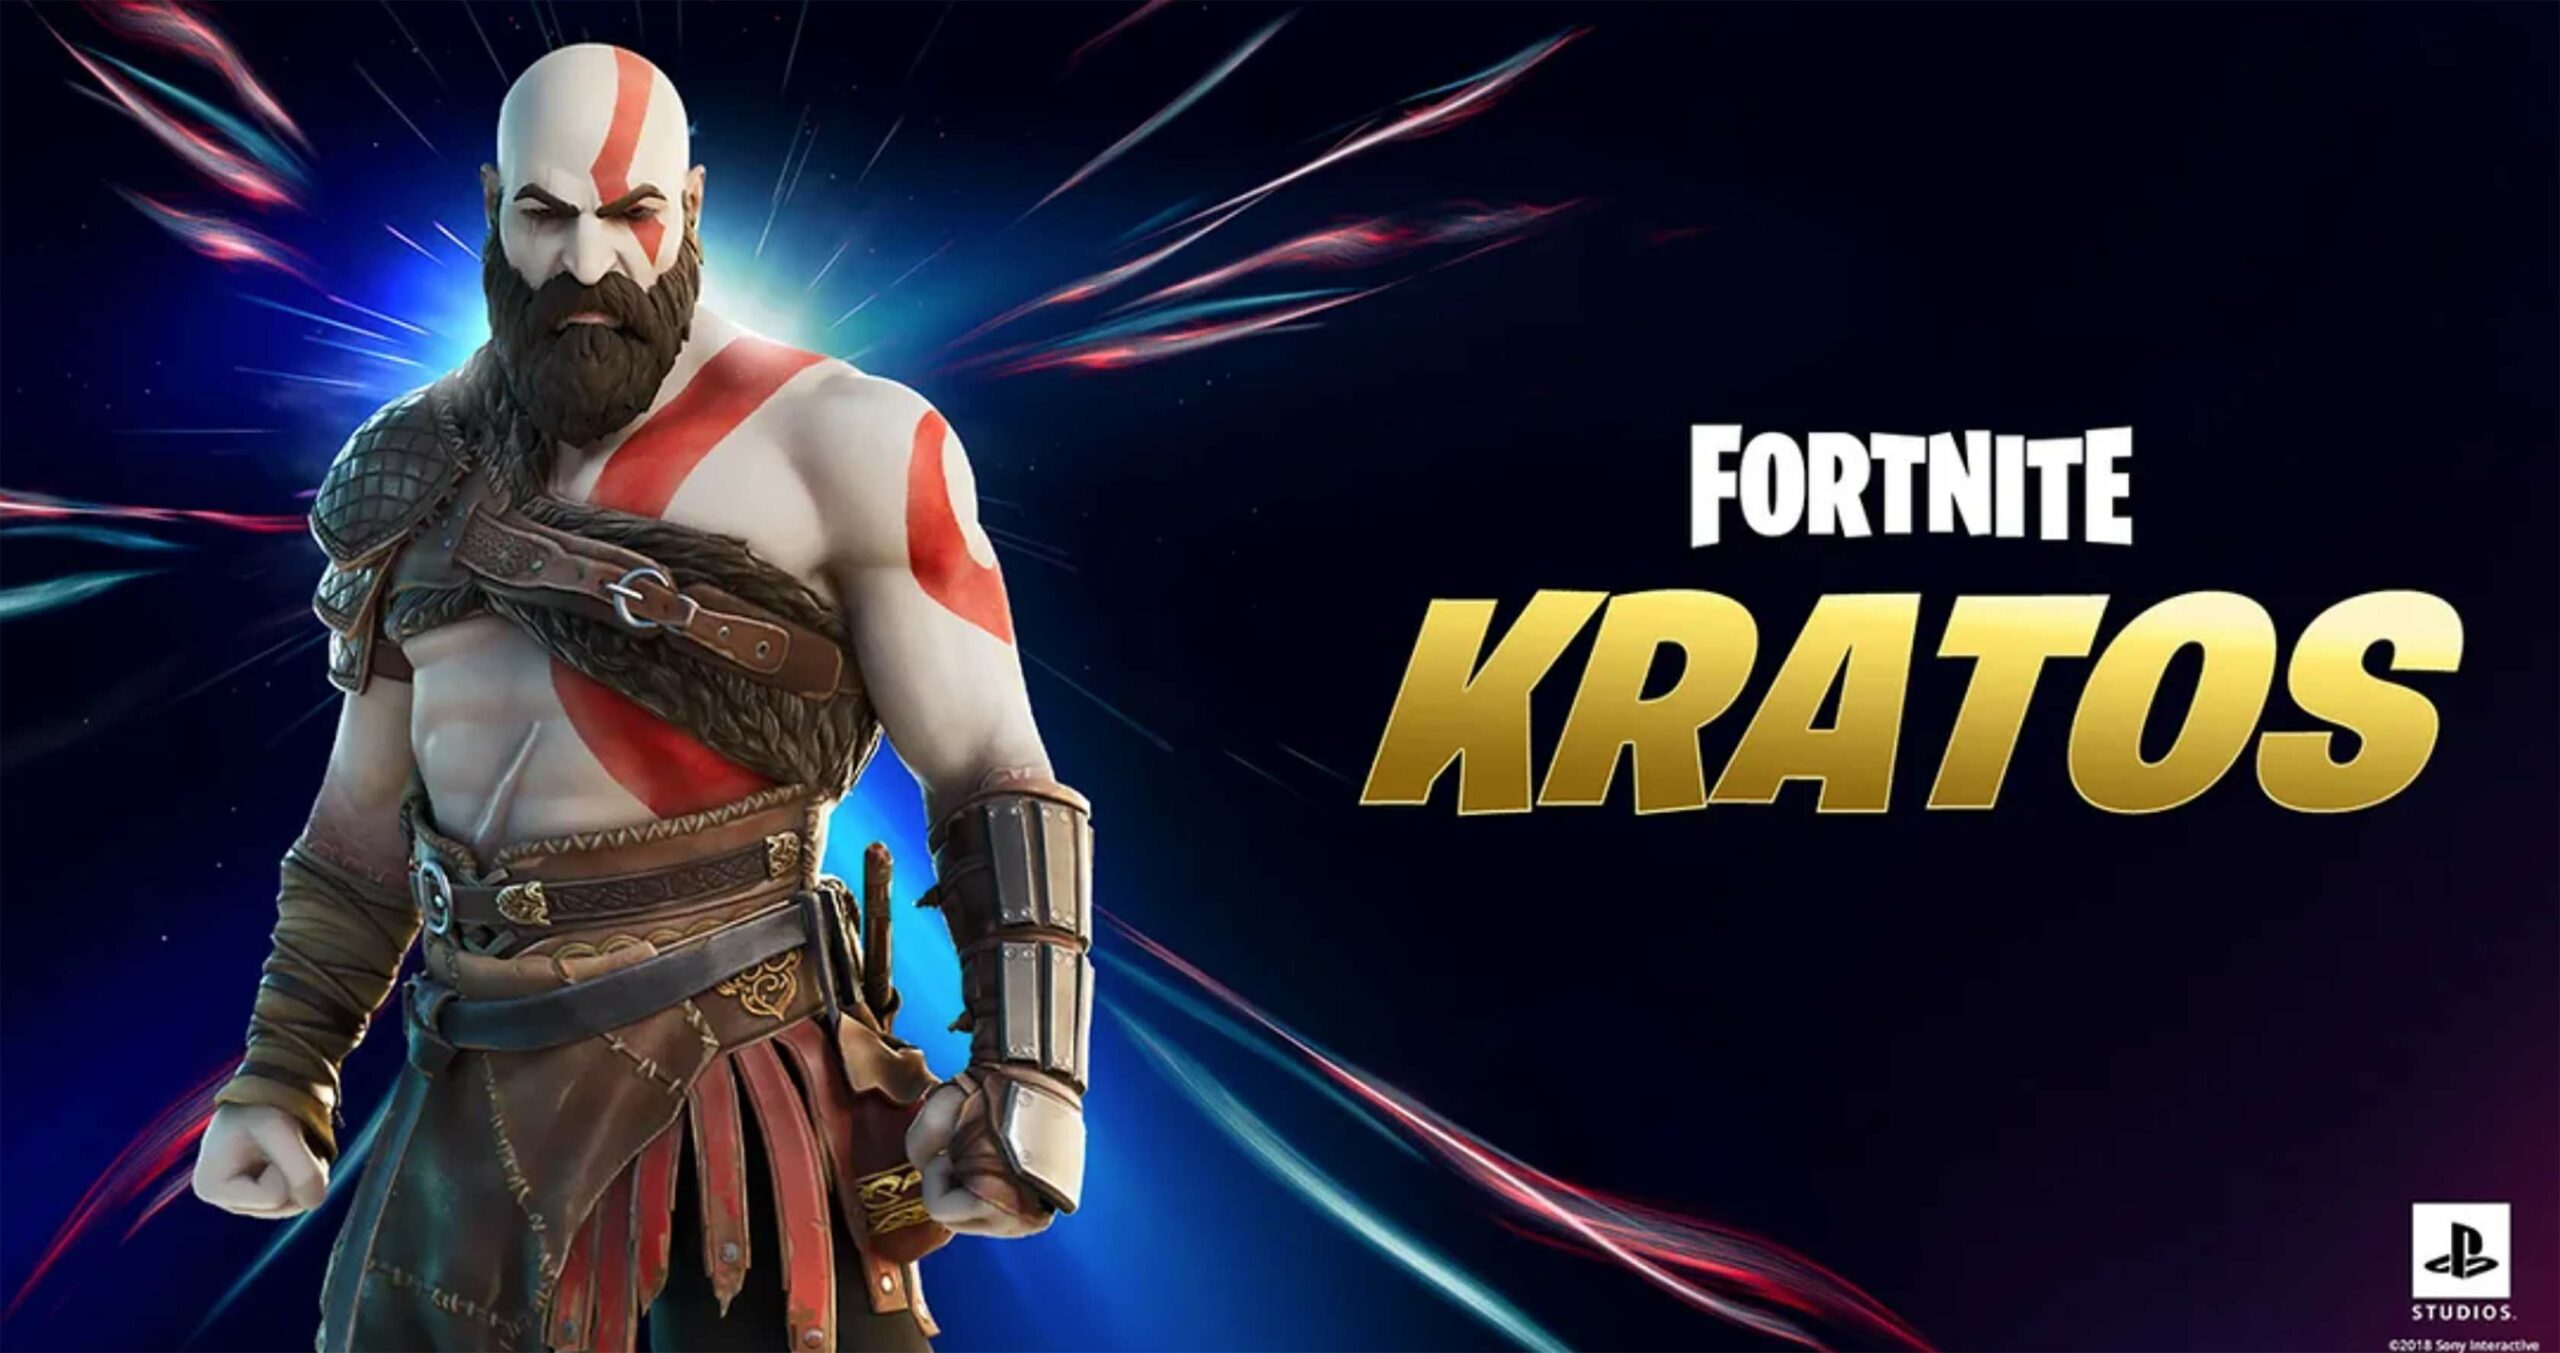 God of War Kratos Fortnite